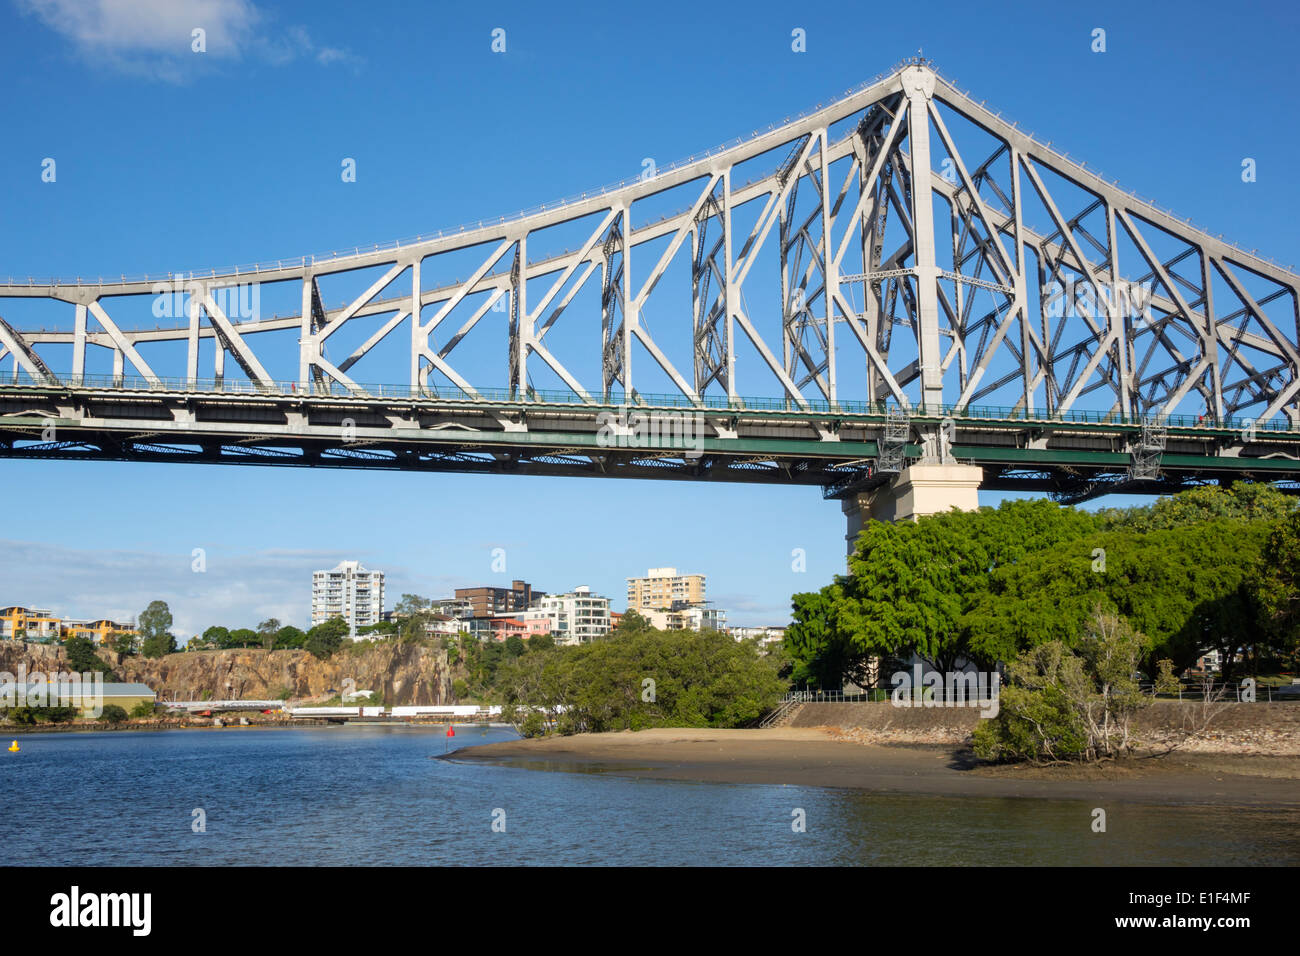 Brisbane Australien, Queensland Brisbane River Water, Story Bridge, Captain Burke Park, Besucher reisen Reise Tour touristischer Tourismus Wahrzeichen, c Stockfoto